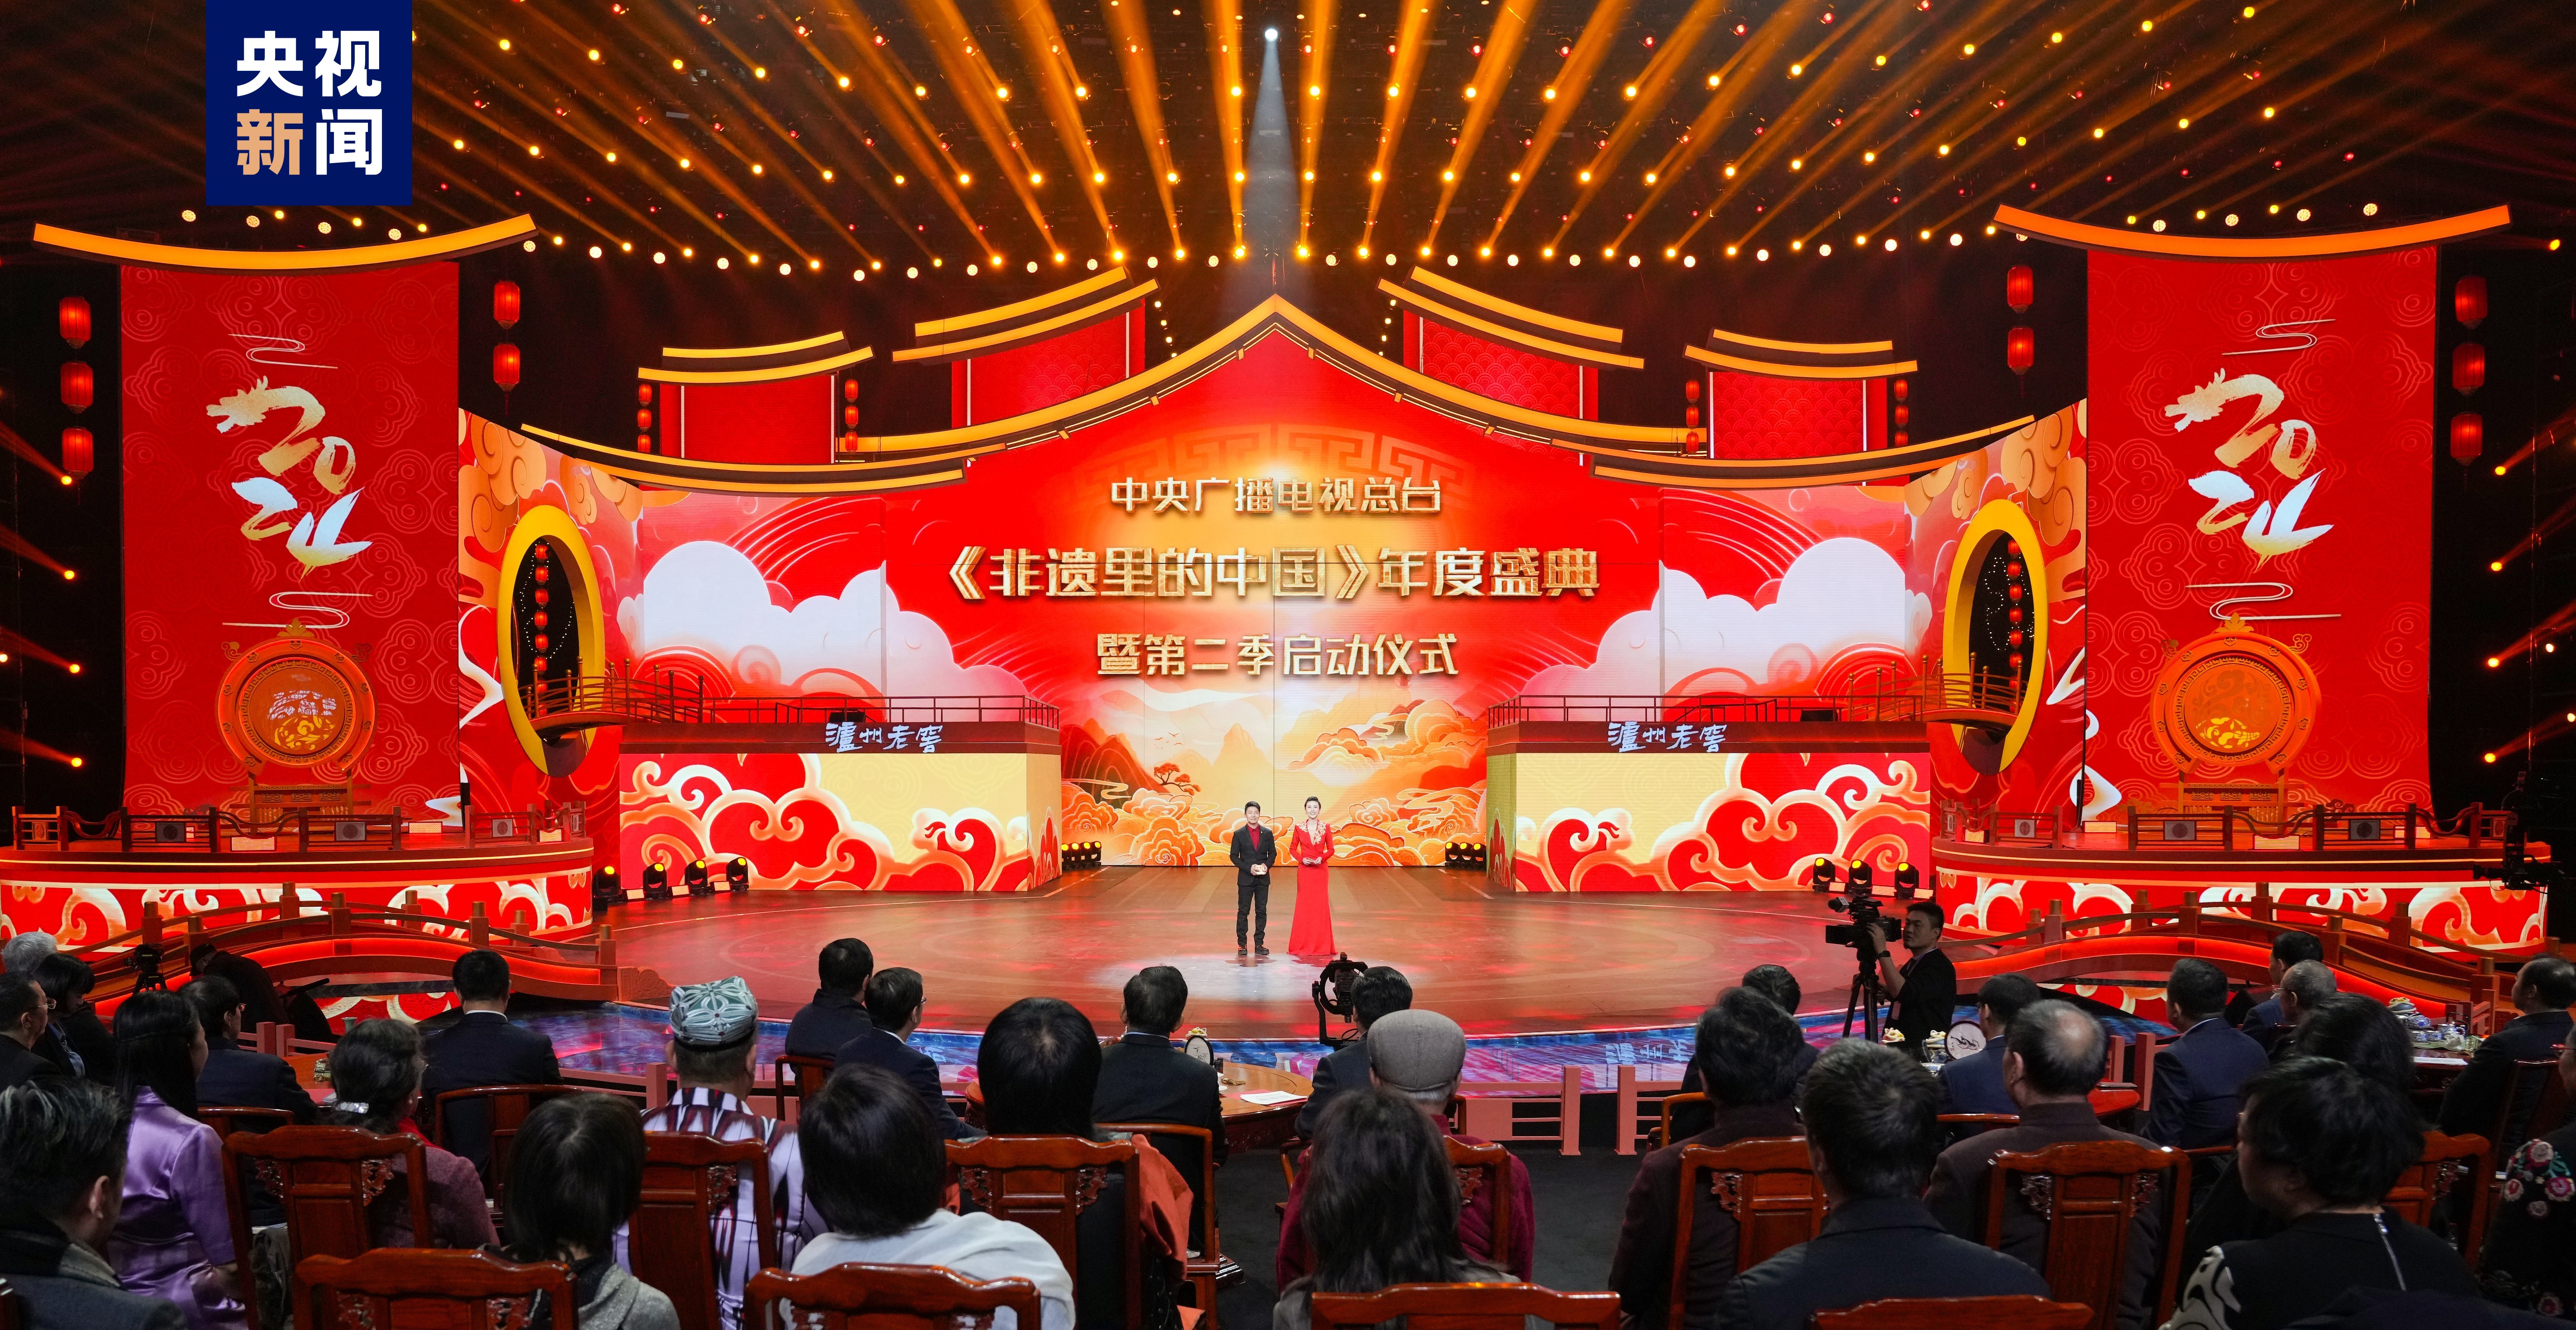 “गैर-भौतिक सम्पदामा रहेको चीन” को वार्षिक समारोह शाङहाईमा आयोजित